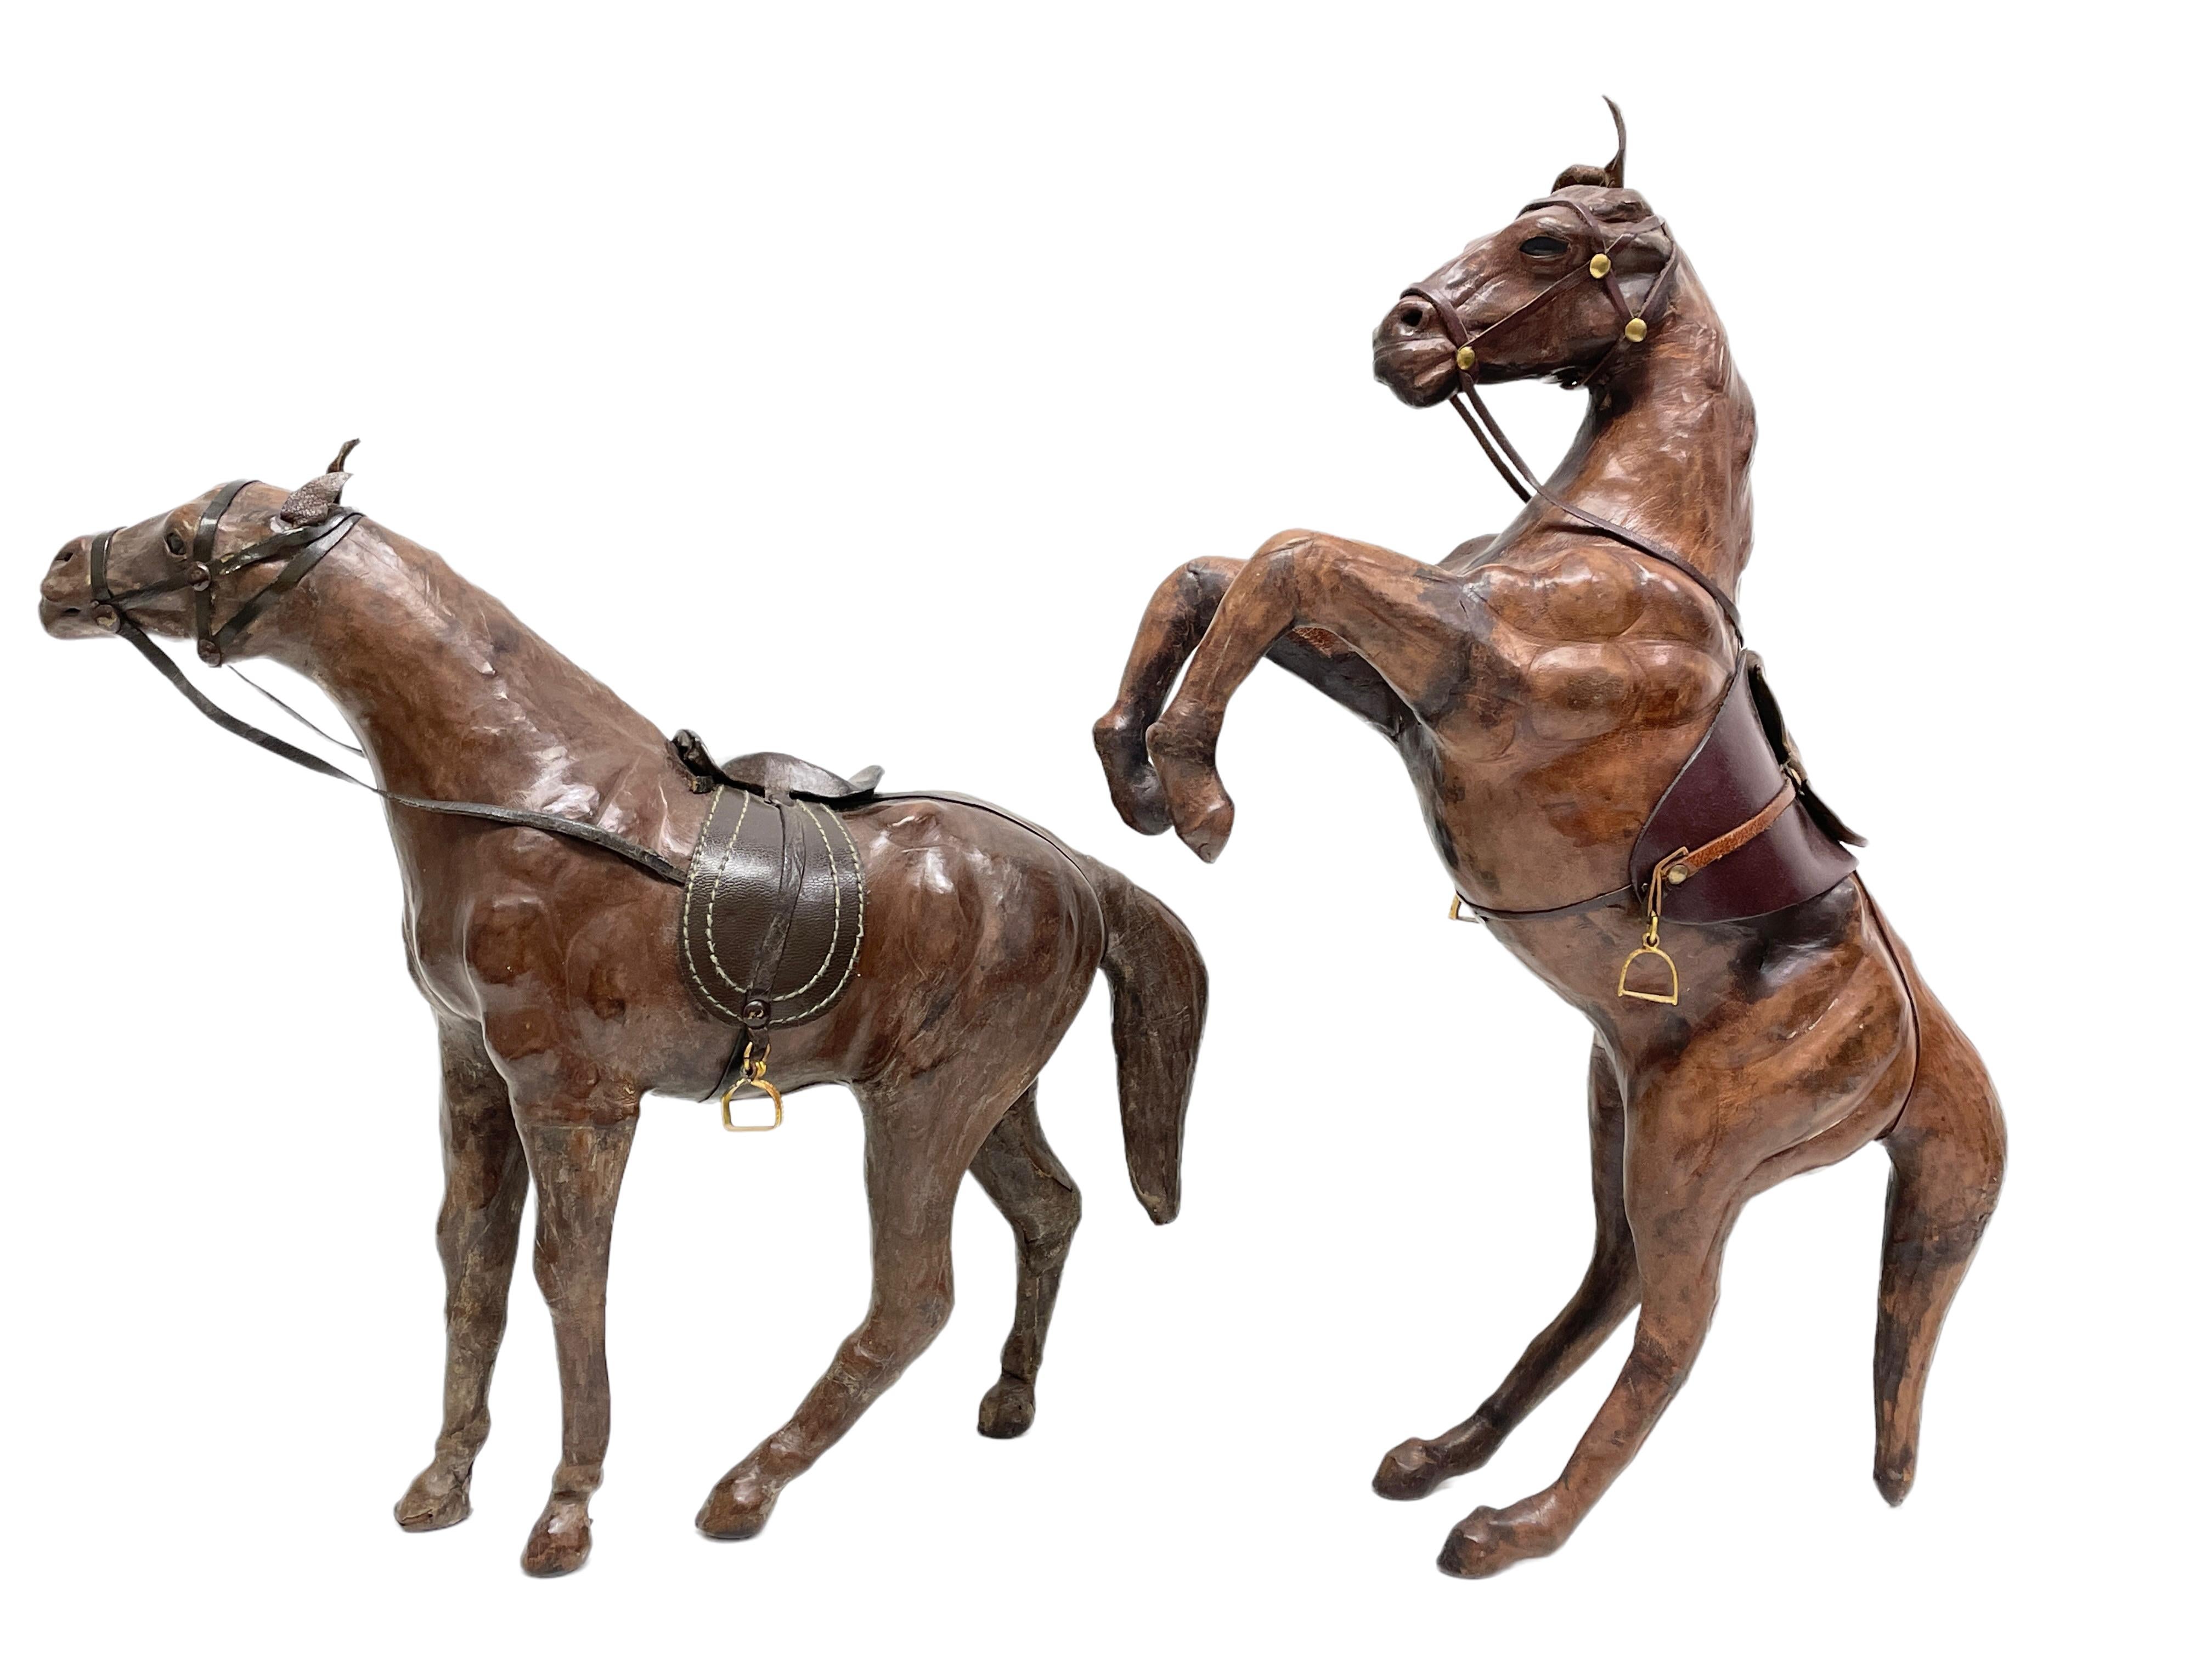 Paire de sculptures de chevaux en cuir dans le style de Dimitri Omersa pour Abercombie & Fitch
Non marqué. Tons bruns, yeux en verre et pièces en laiton.
Cheval debout : 16,25